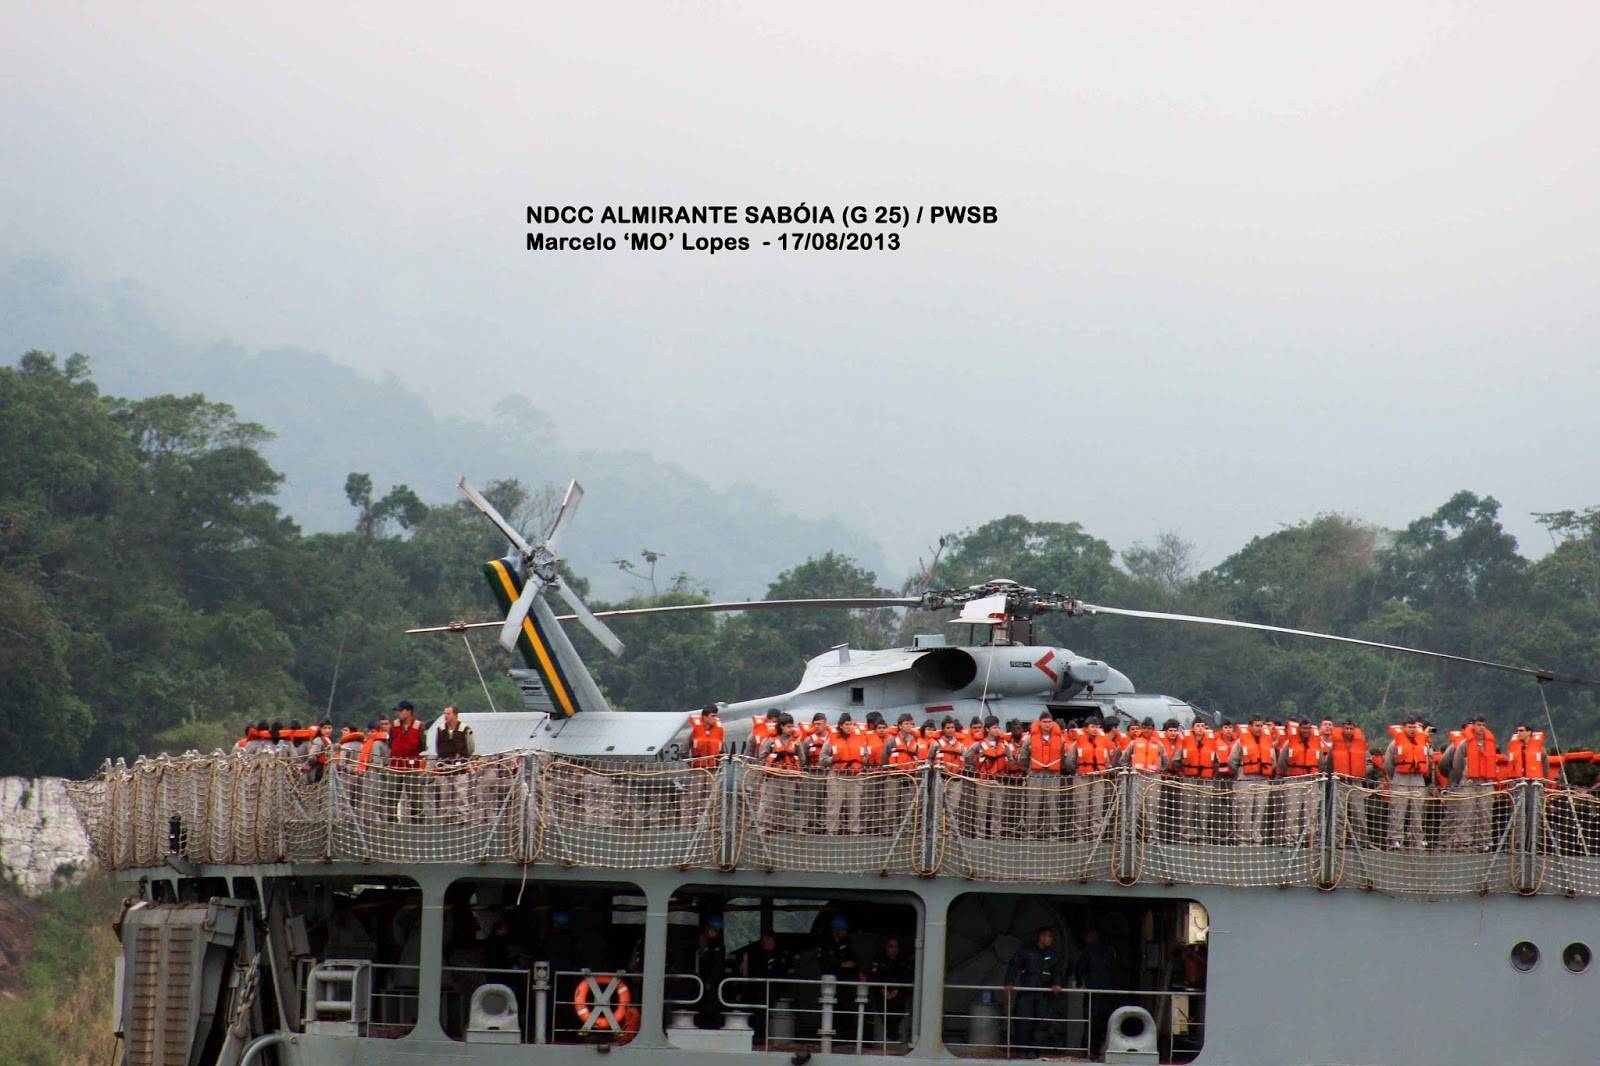 Detalhe da popa e do convôo do Almirante Sabóia deixando o porto de Santos em 17 de agosto de 2013, com destaque para a aeronave MH-16 Seahawk. (foto: Marcelo M. Lopes da Silva)